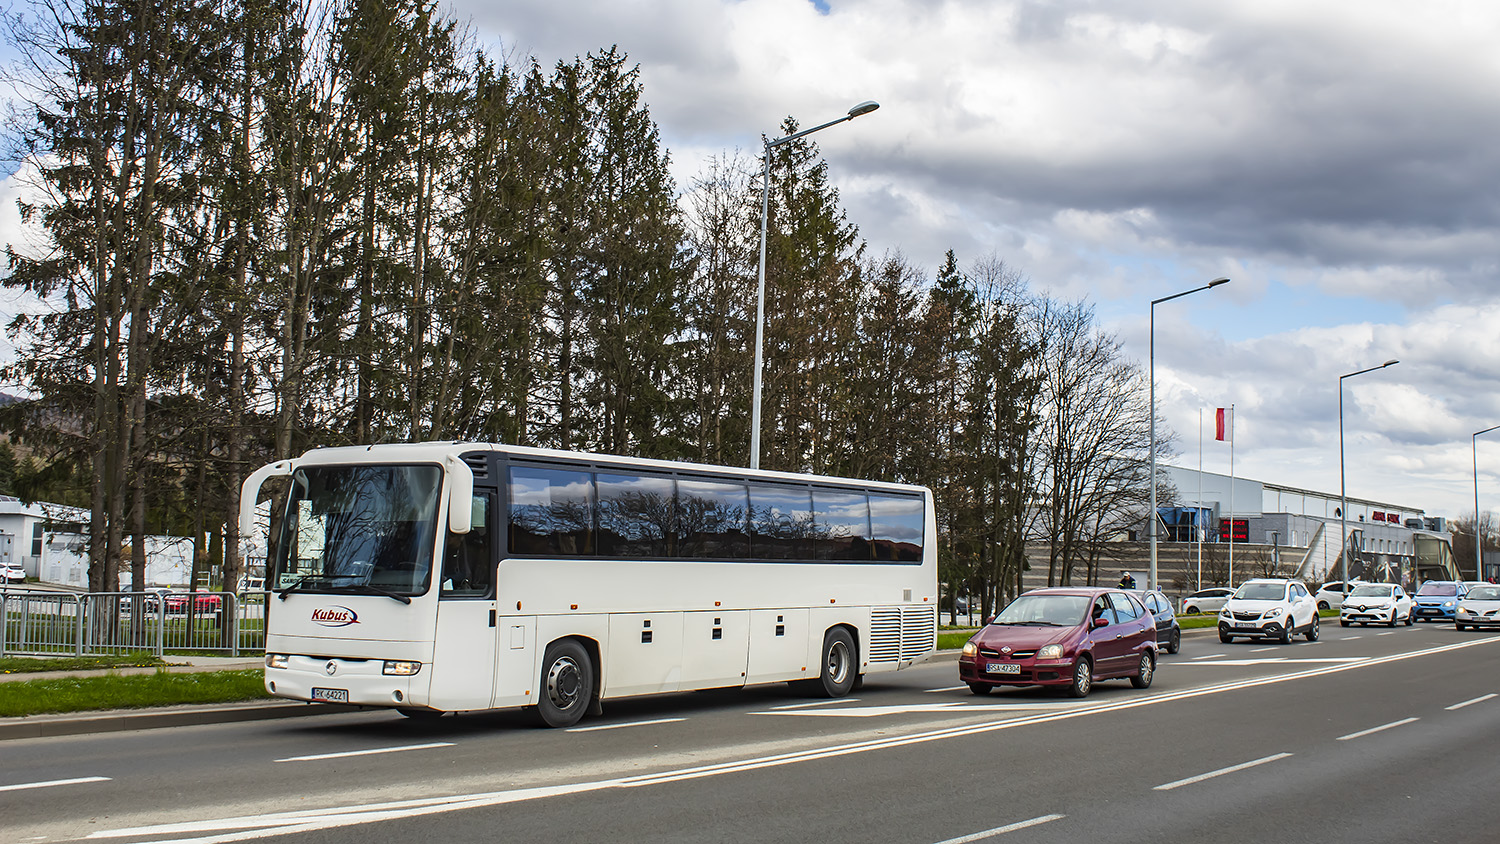 Krosno, Irisbus Iliade # RK 64221